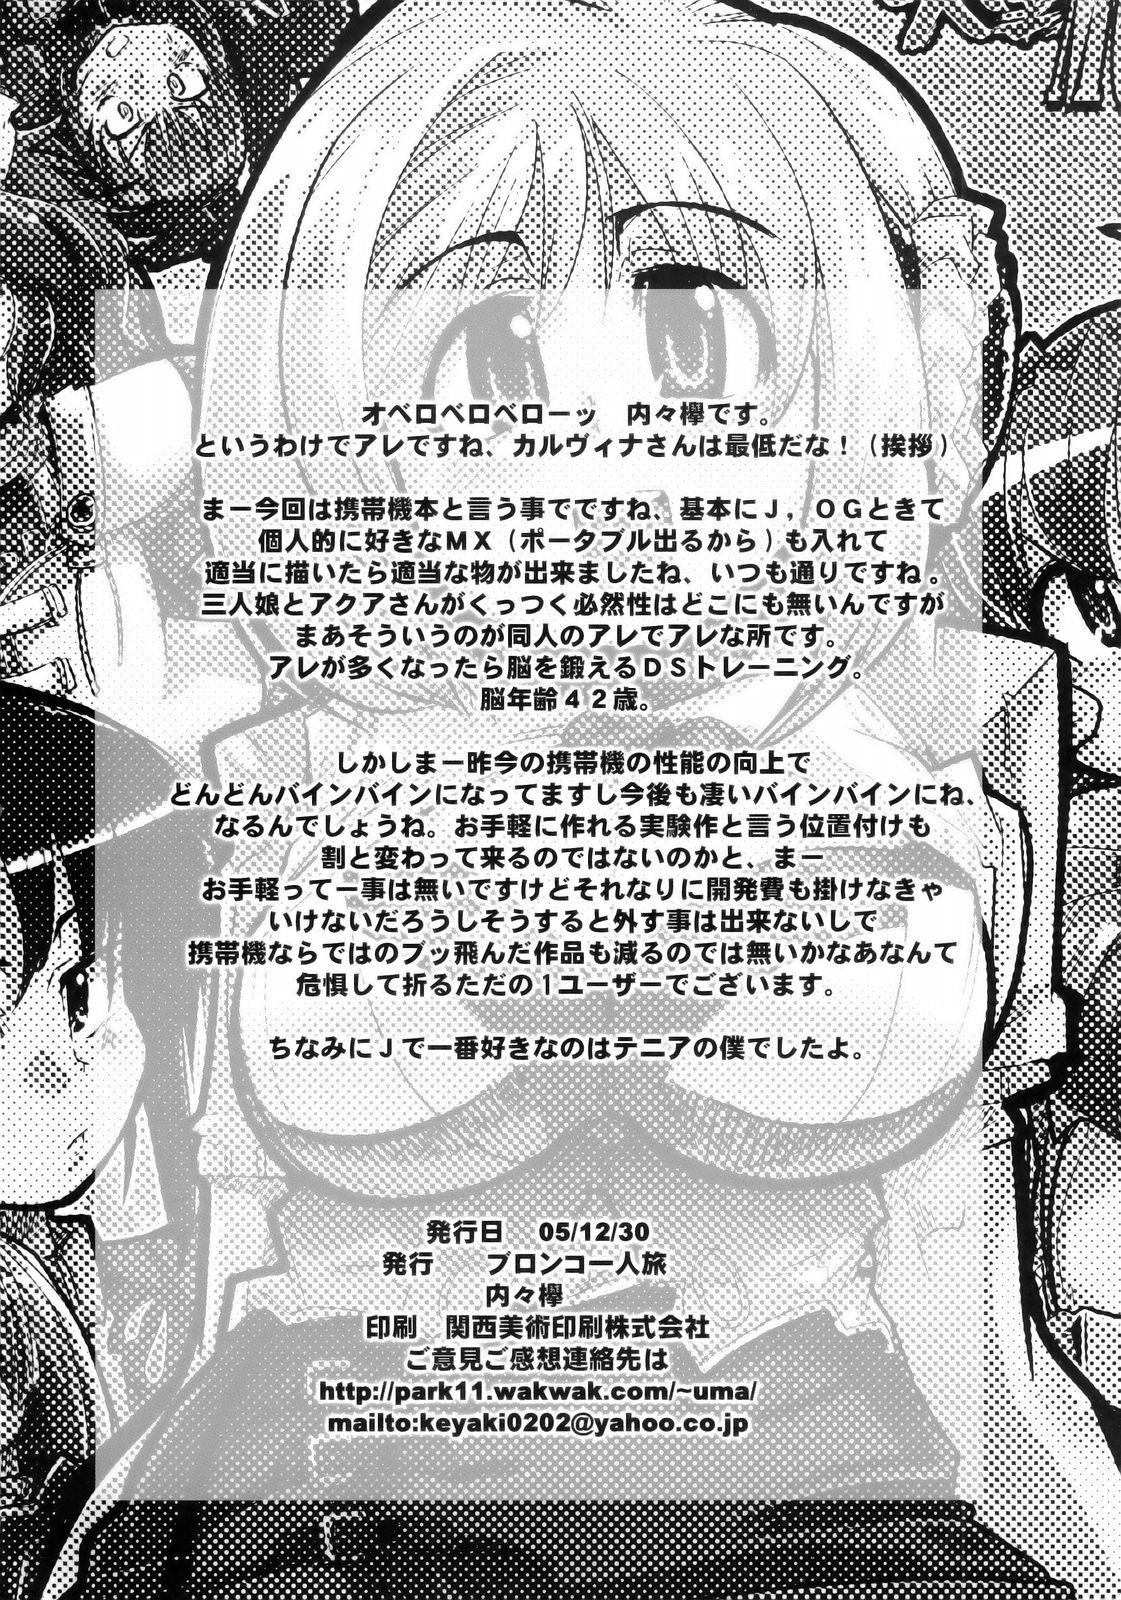 Storyline Boku no Watashi no Super Bobobbo Taisen MGJOX - Super robot wars Penetration - Page 29